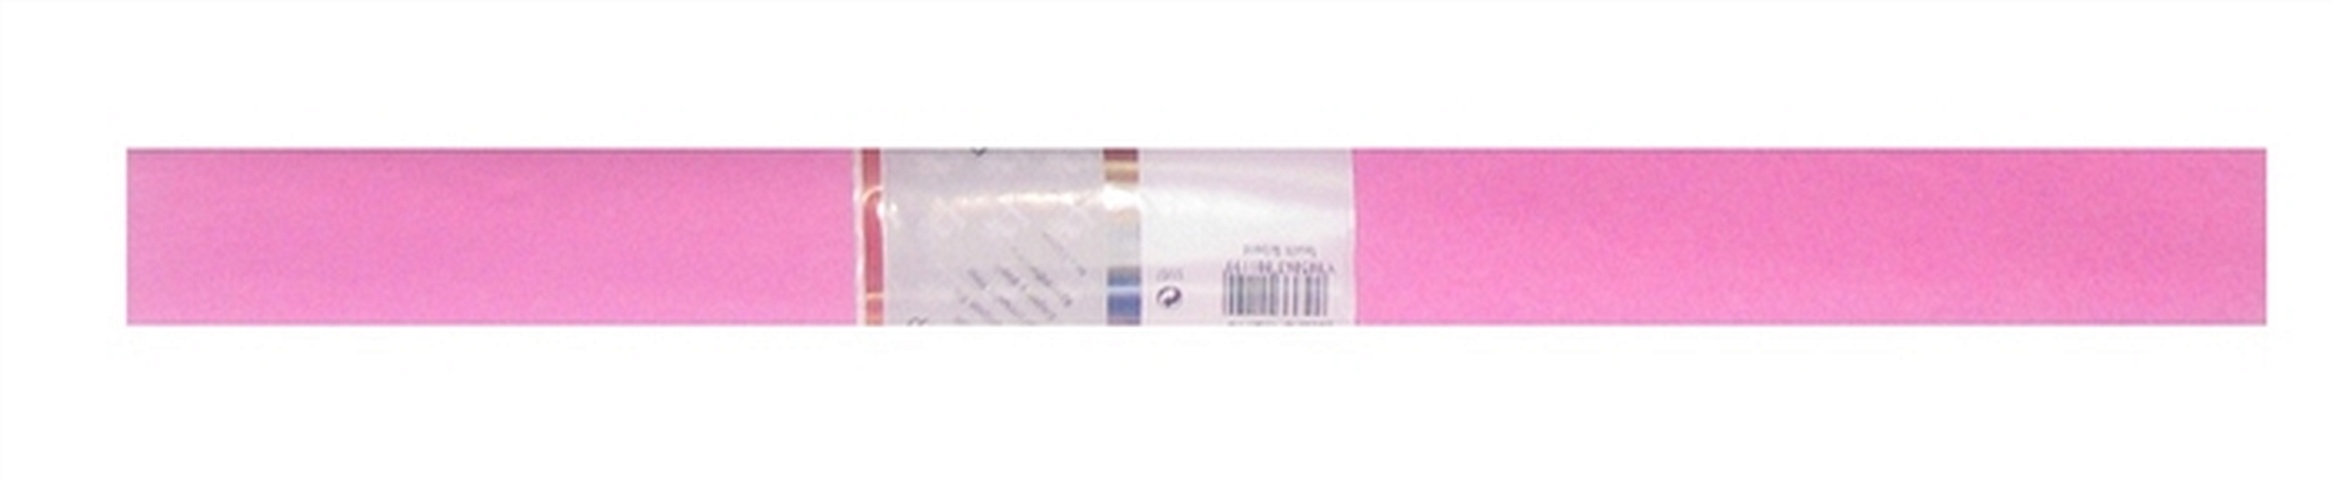 Бумага гофрированная Розовая 50*250, WEROLA бумага крепированная werola цвет белый 50х250 см